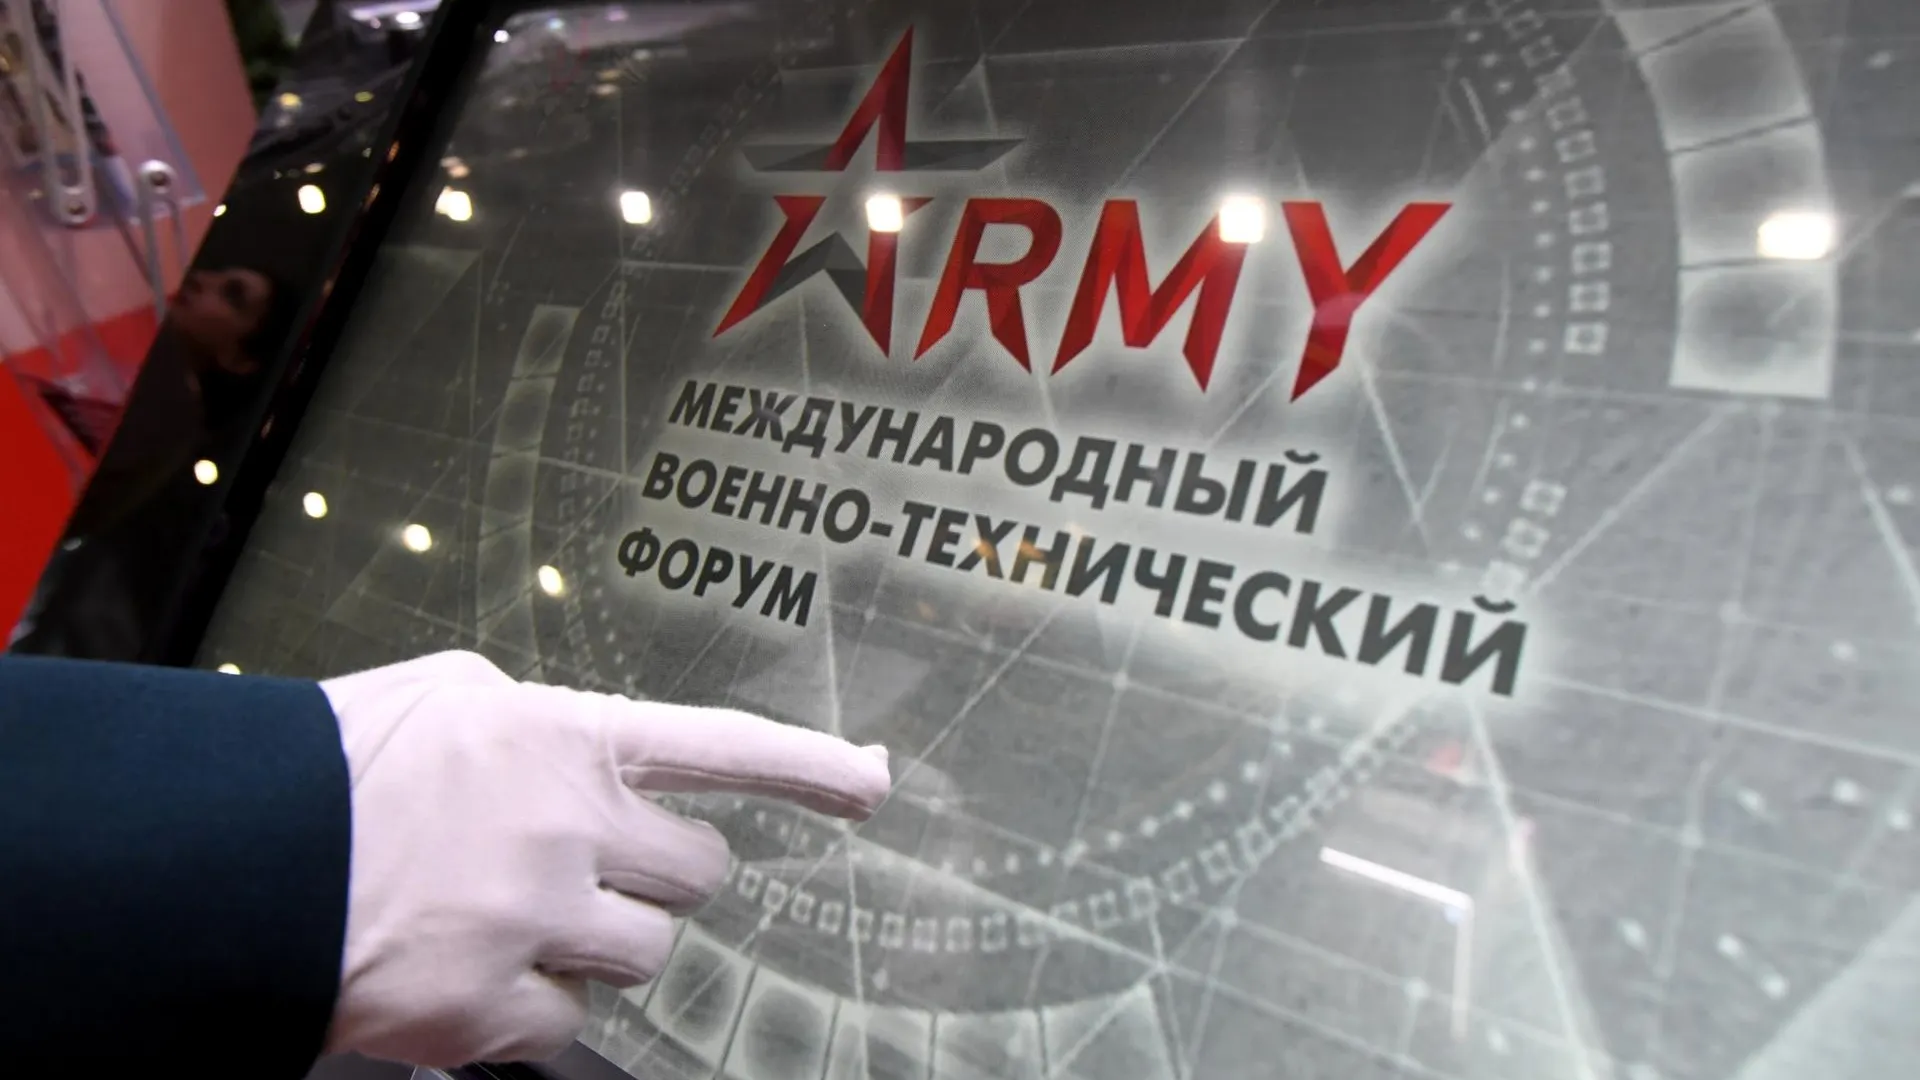 Форум «Армия‑2022»: как попасть и на что можно посмотреть